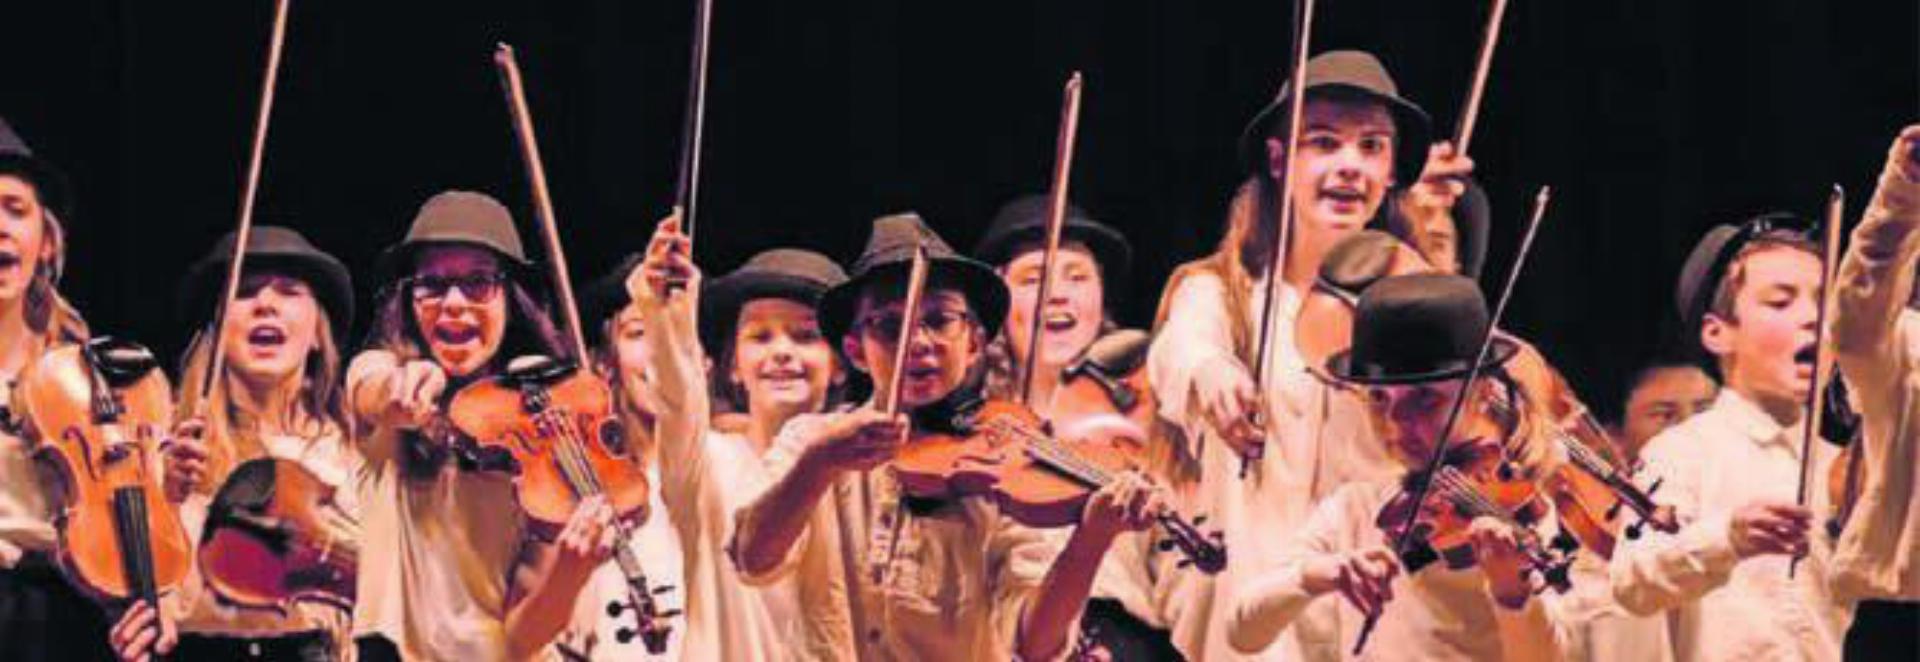 Das Jugendstreichorchester «Les Ministrings» begeistert mit seiner Leichtigkeit. Bild: zg